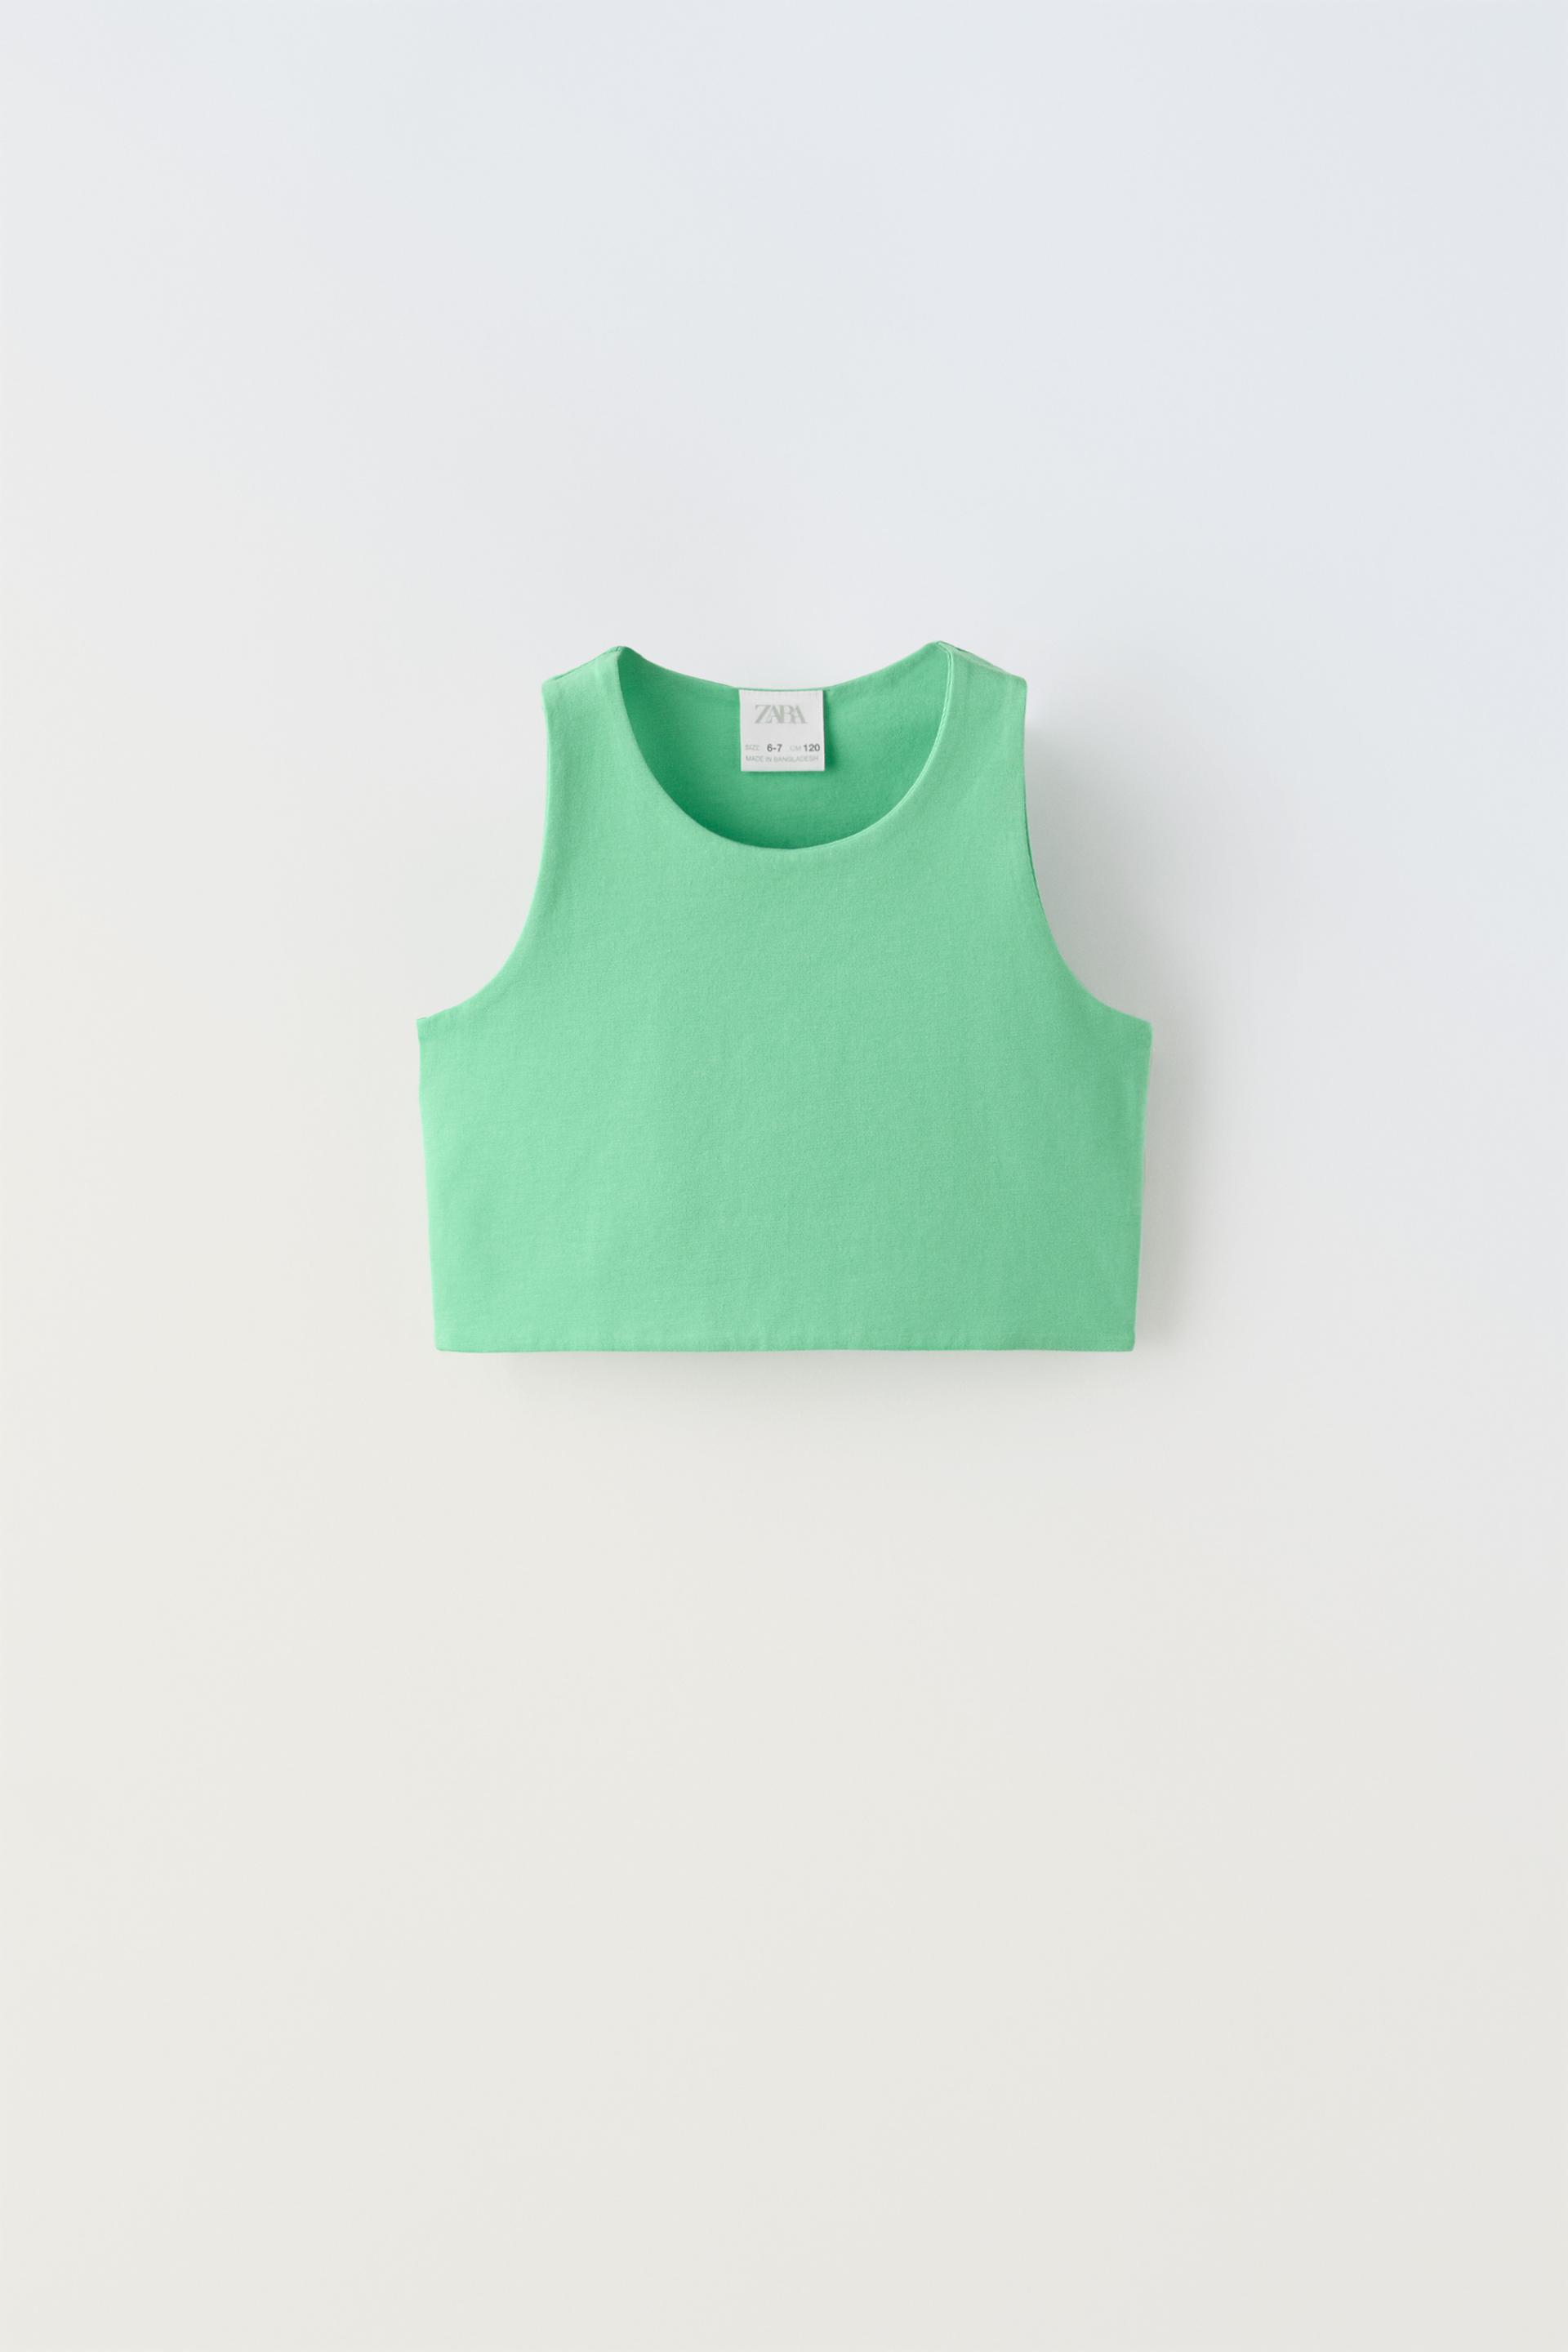 Топ Zara Sleeveless Crop, зеленый футболка женская оверсайз с графическим принтом модный топ без рукавов бандажный топ с круглым вырезом уличная одежда 2022